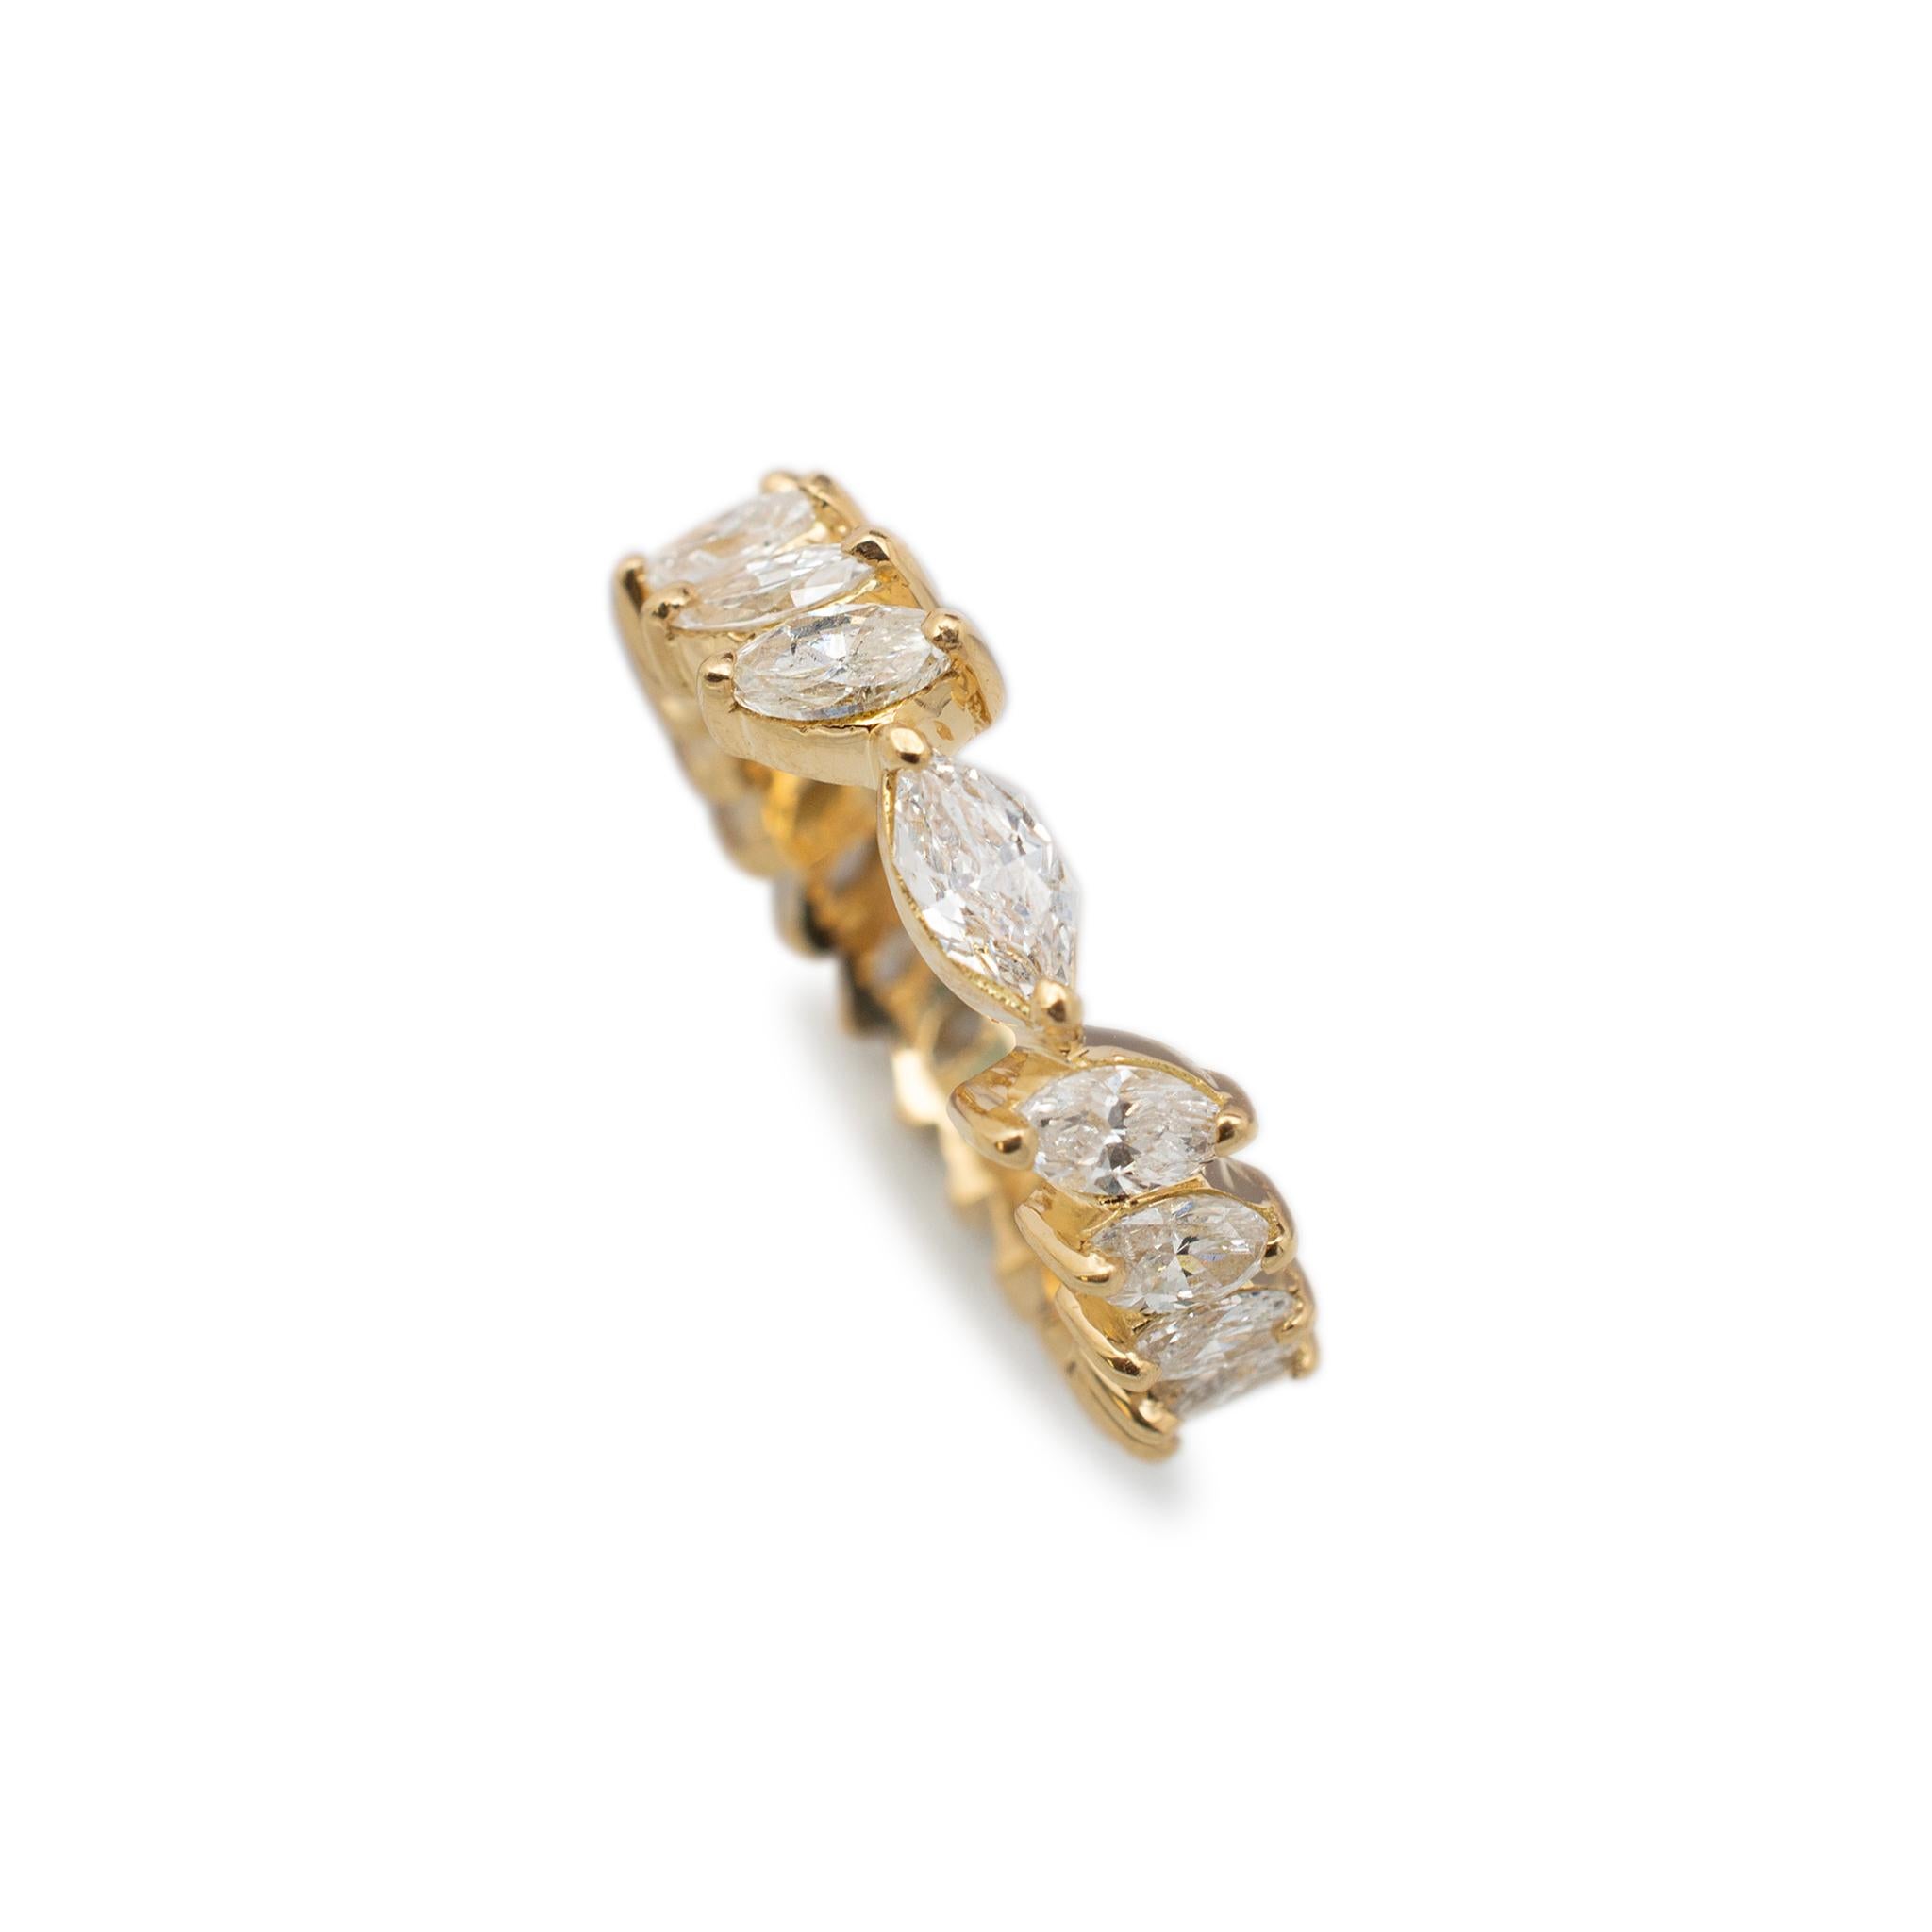 Geschlecht: Damen

Metall Typ: 18K Gelbgold

Ring Größe: 6.5

Breite: 6.00 mm

Gewicht: 5.78 Gramm

Diamant-Hochzeitsarmband aus 18 Karat Gelbgold für die Ewigkeit mit passgenauem Schaft. Das Metall wurde getestet und es wurde festgestellt, dass es